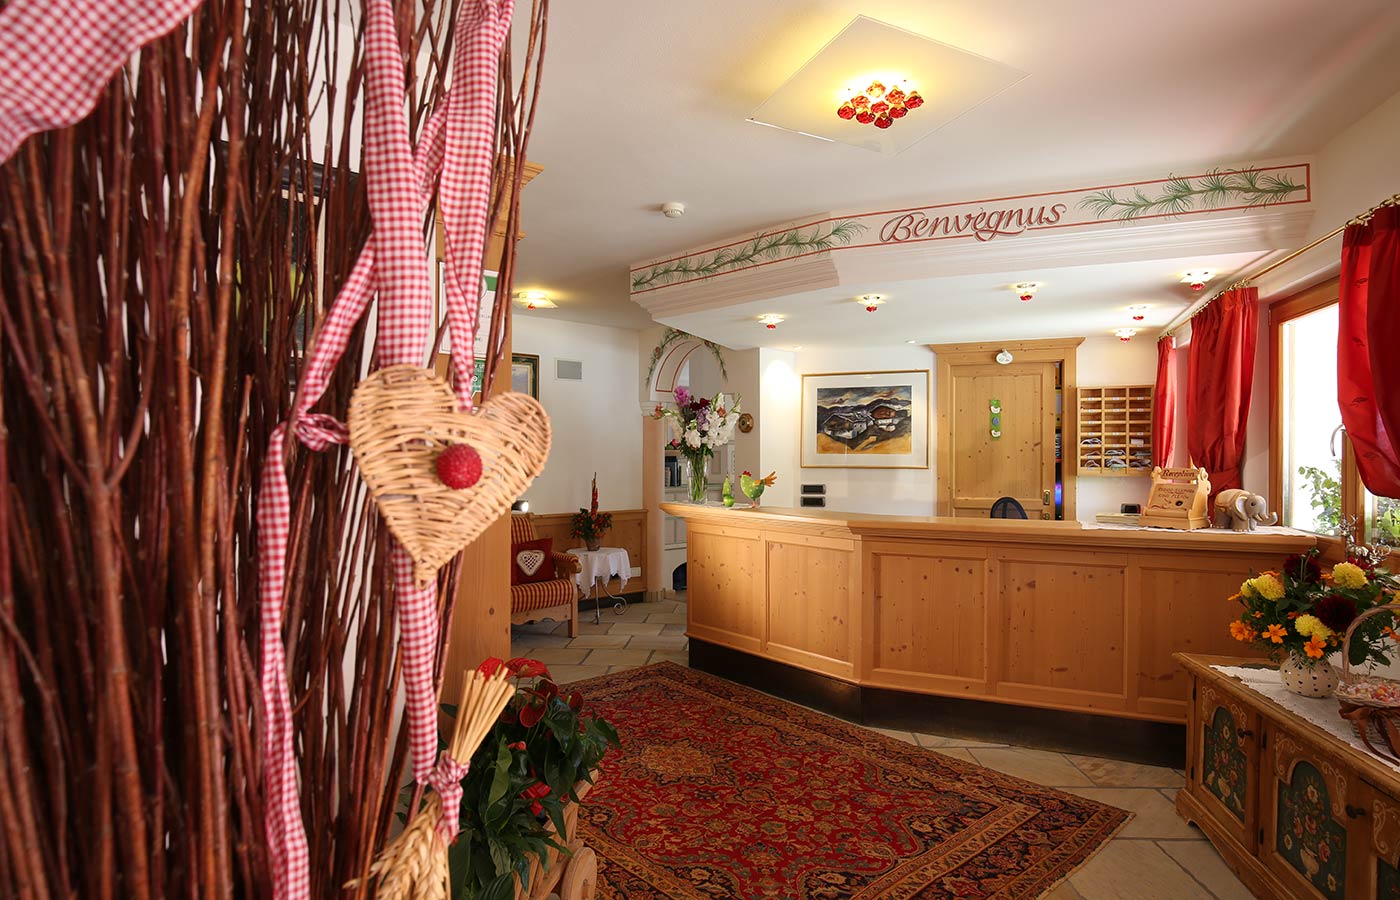 La reception dell'Hotel Mesdì arredata in legno, con fiori sul bancone e un tappeto sul pavimento